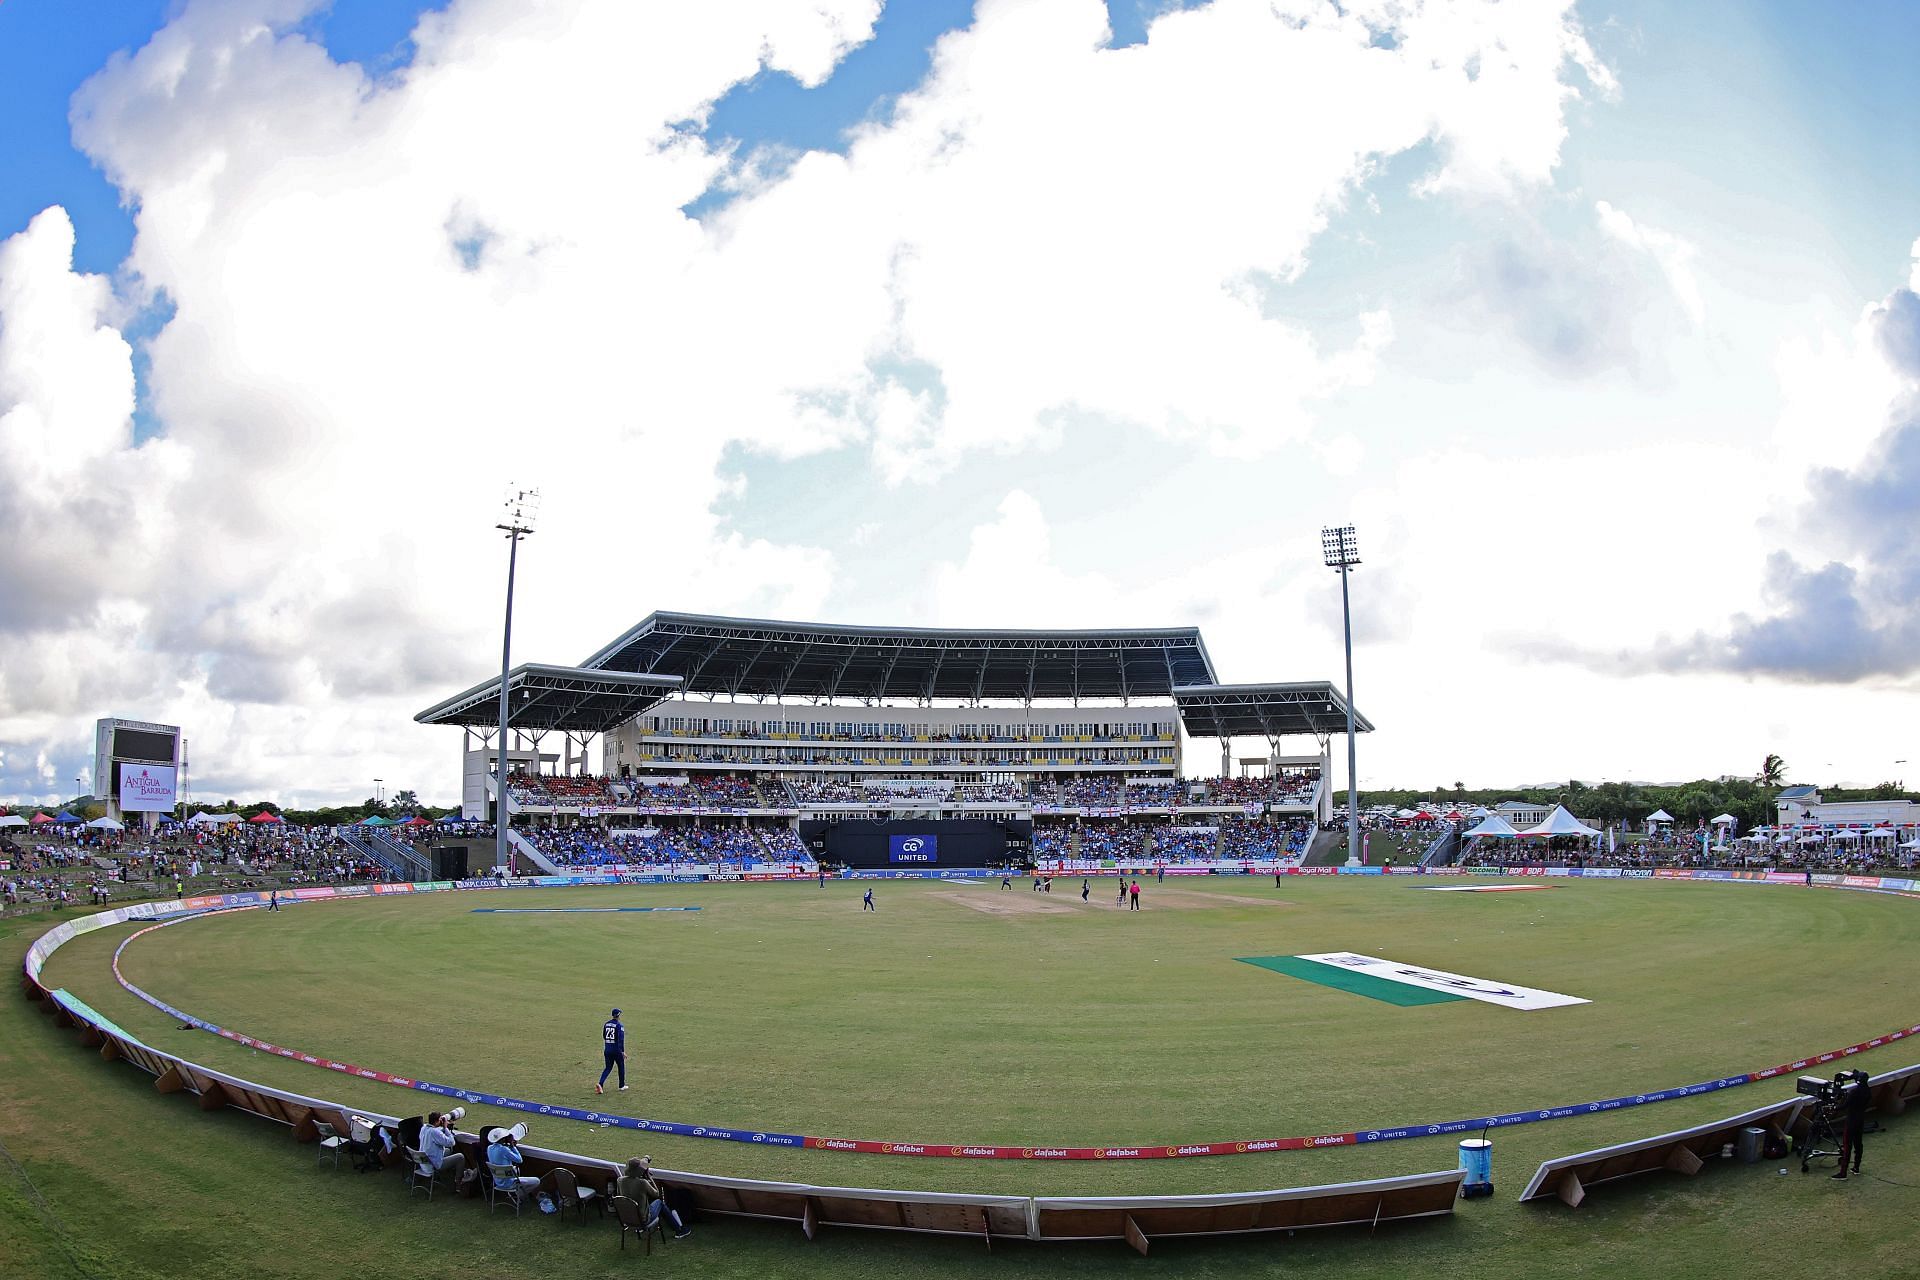 West Indies v England - 1st ODI